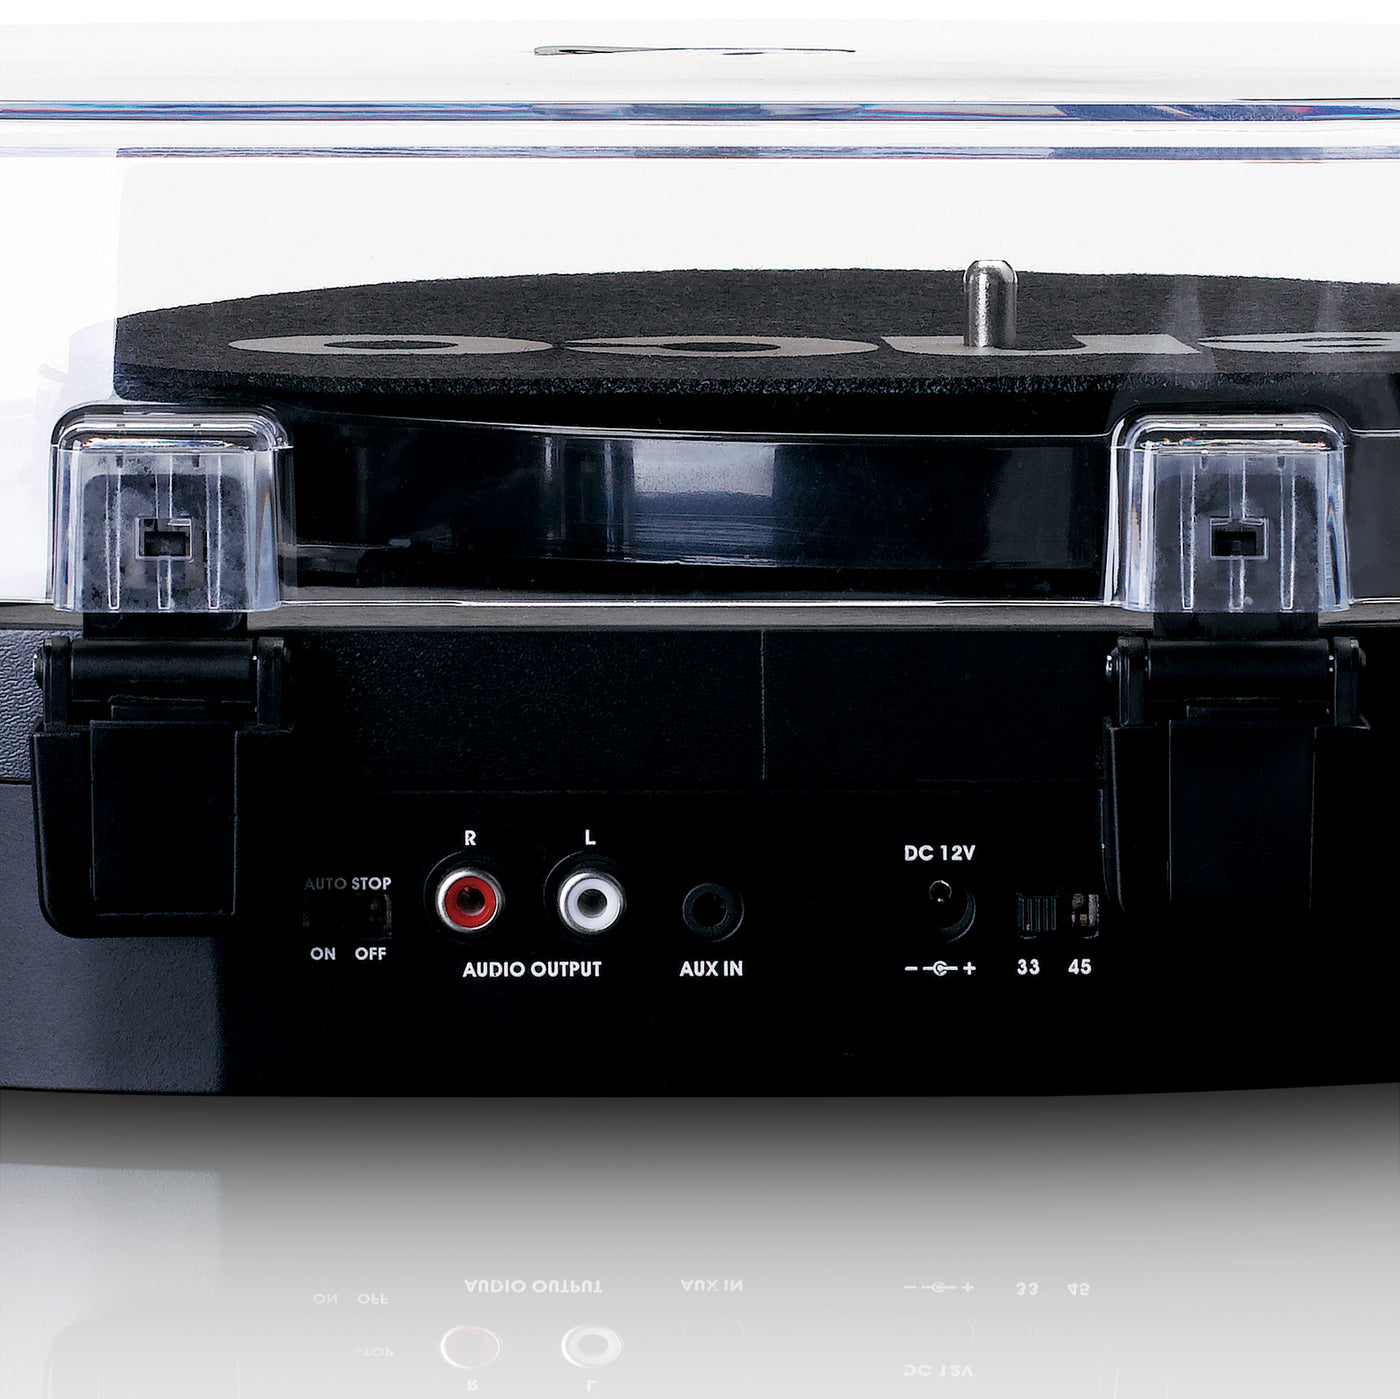 LENCO LS-40BK - Gramofon z wbudowanymi głośnikami - Czarny